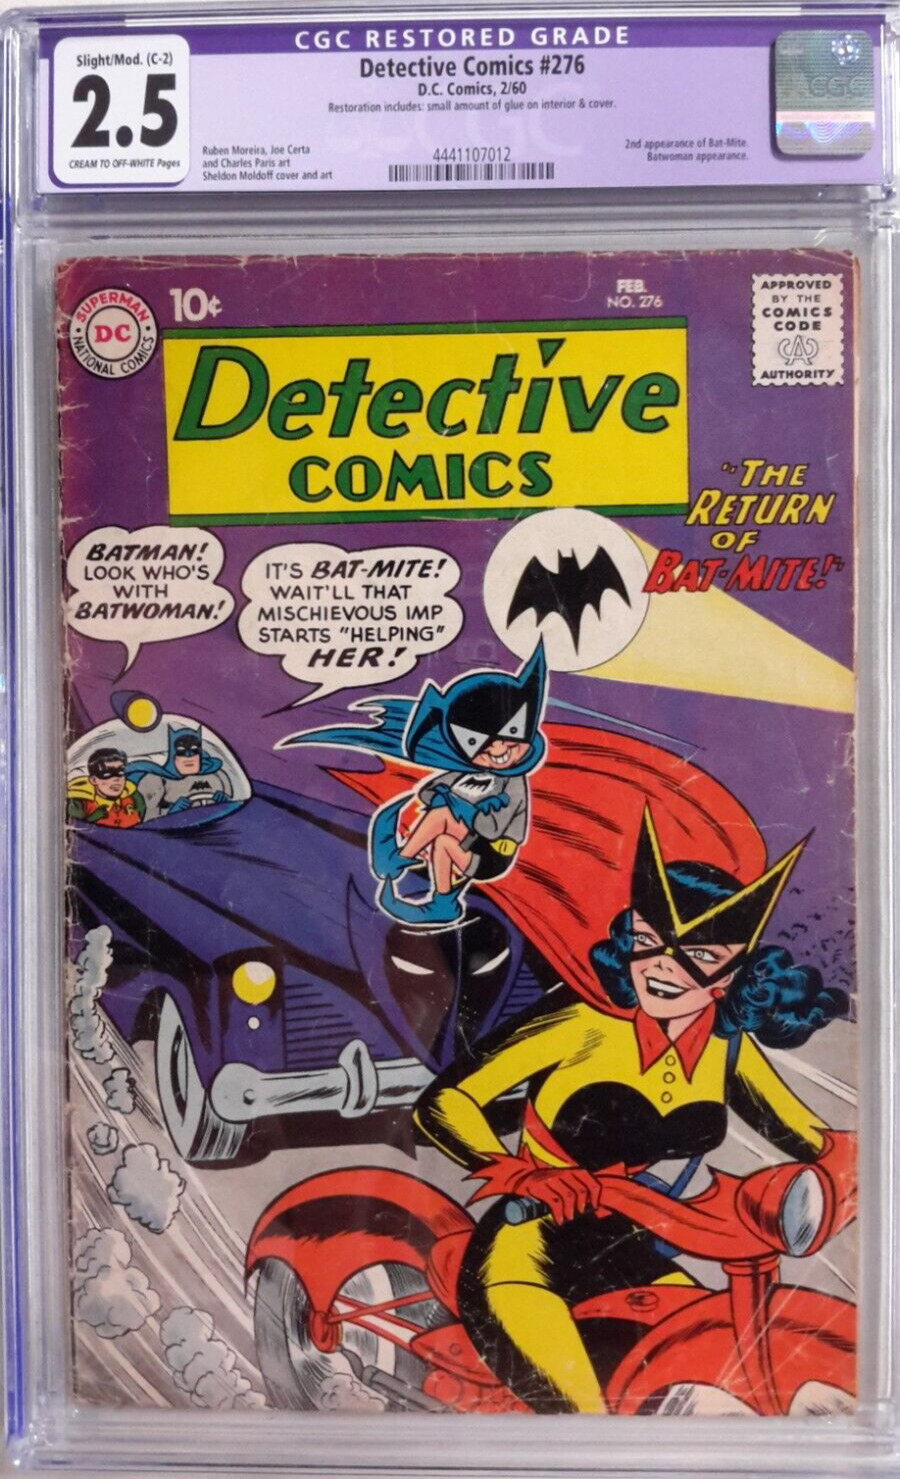 🦇DETECTIVE COMICS #276 CGC 2.5*DC 1960*BATMAN*2ND BAT-MITE*BATWOMAN*RESTORED*